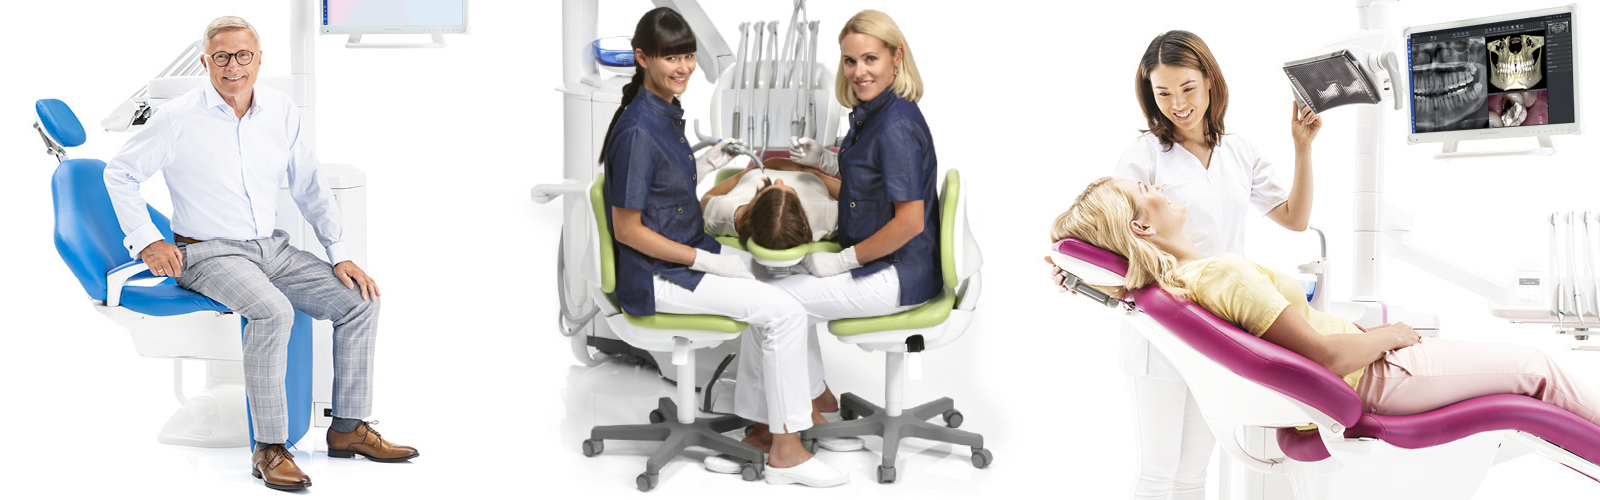 Tre bilder som visar ergonomi för både patient och tandvårdspersonal